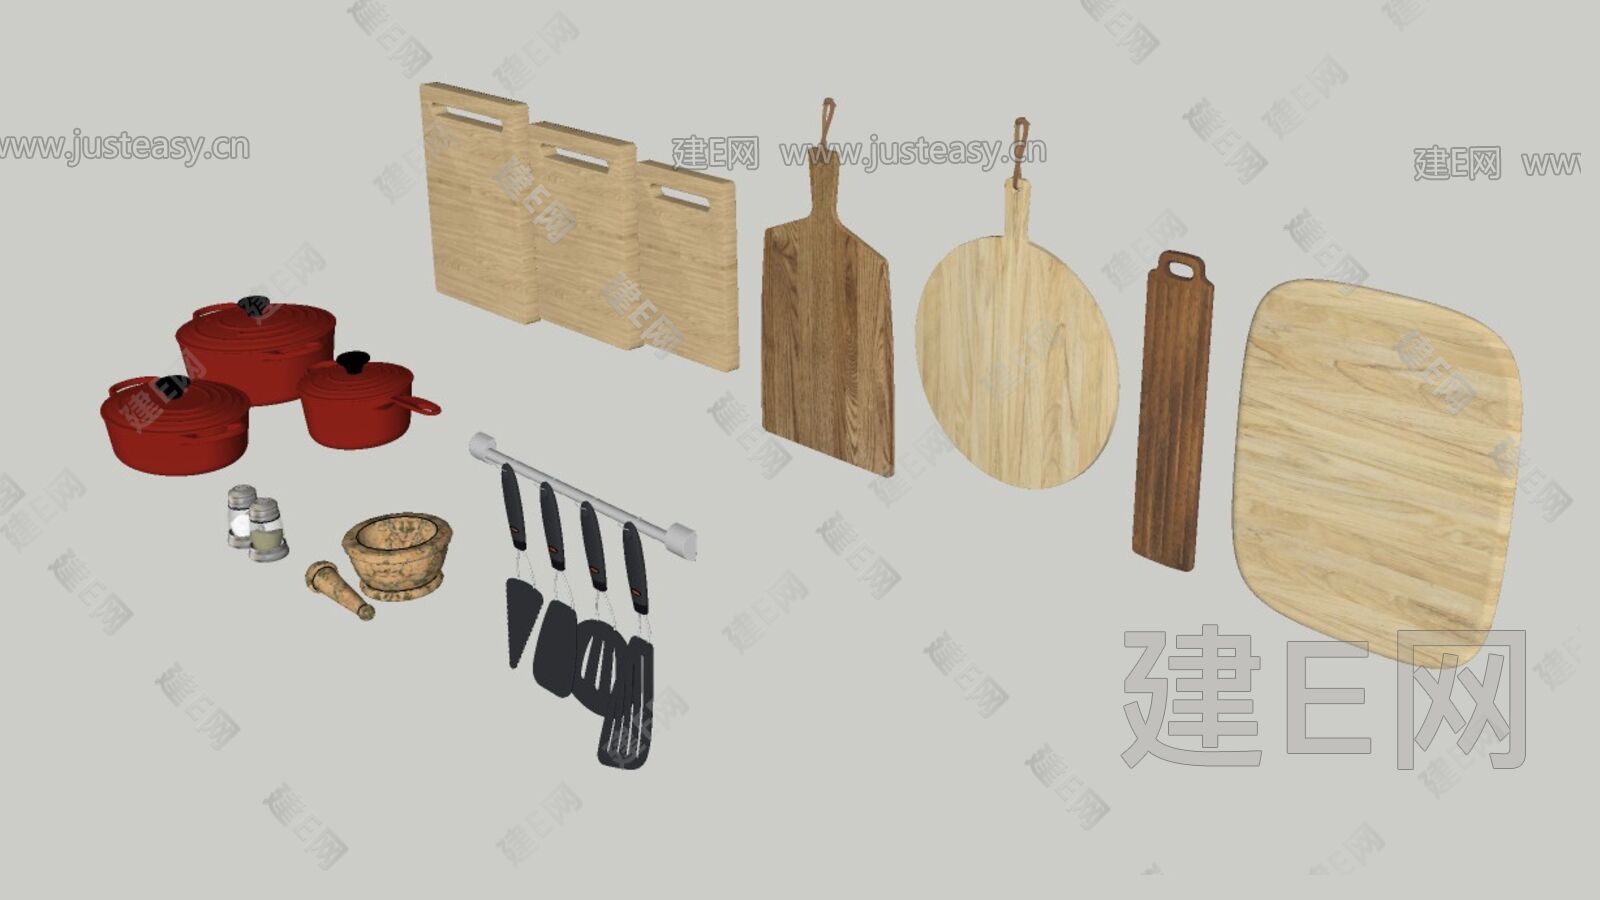 锅碗瓢盆 厨房摆件3d模型下载_ID12210197_3dmax免费模型-欧模网